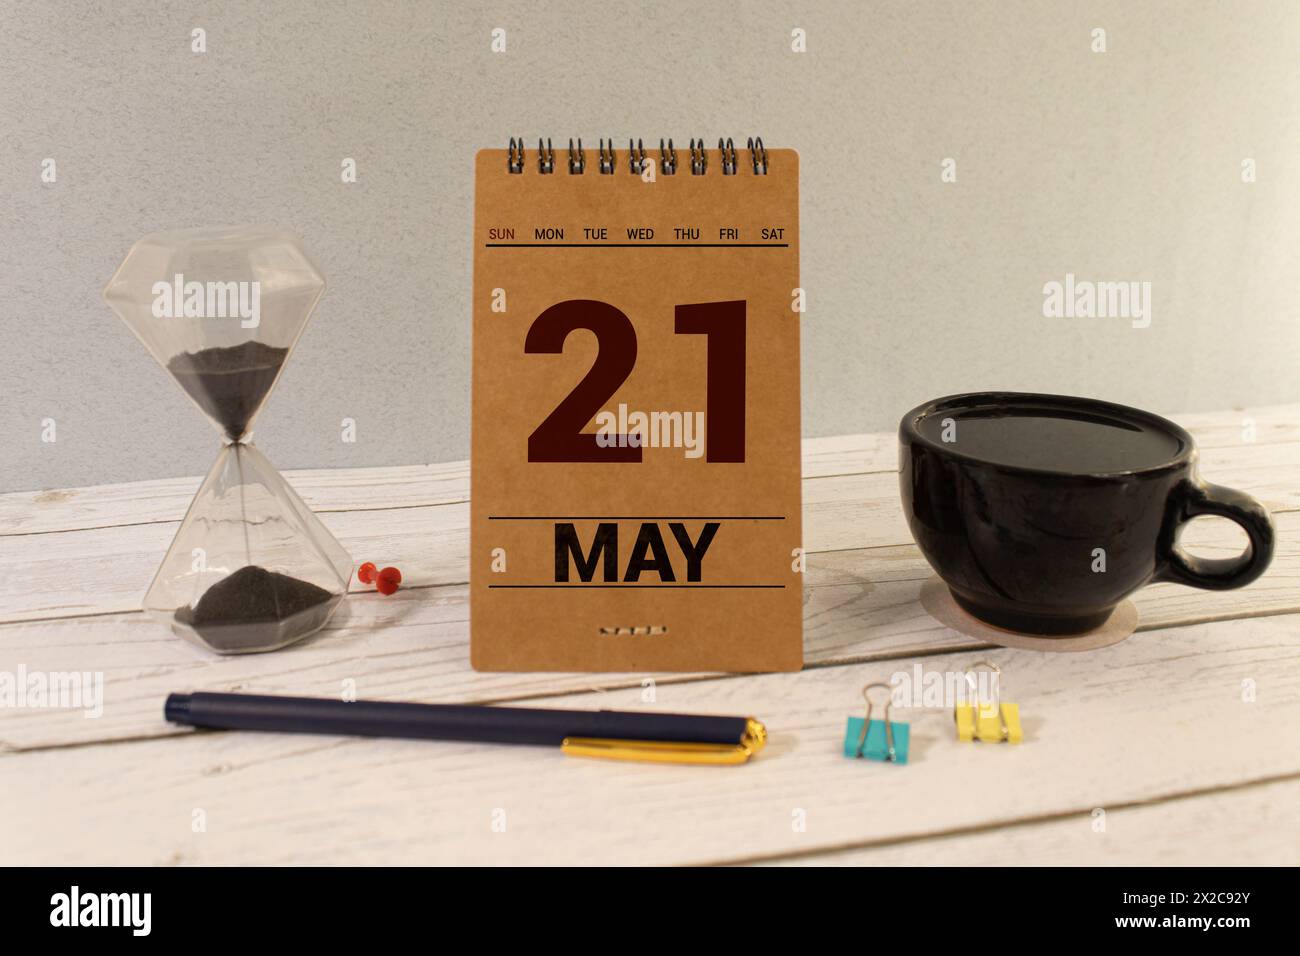 21 mai. Image de mai 21 calendrier de couleur en bois sur fond blanc. Jour de printemps, espace vide pour le texte Banque D'Images